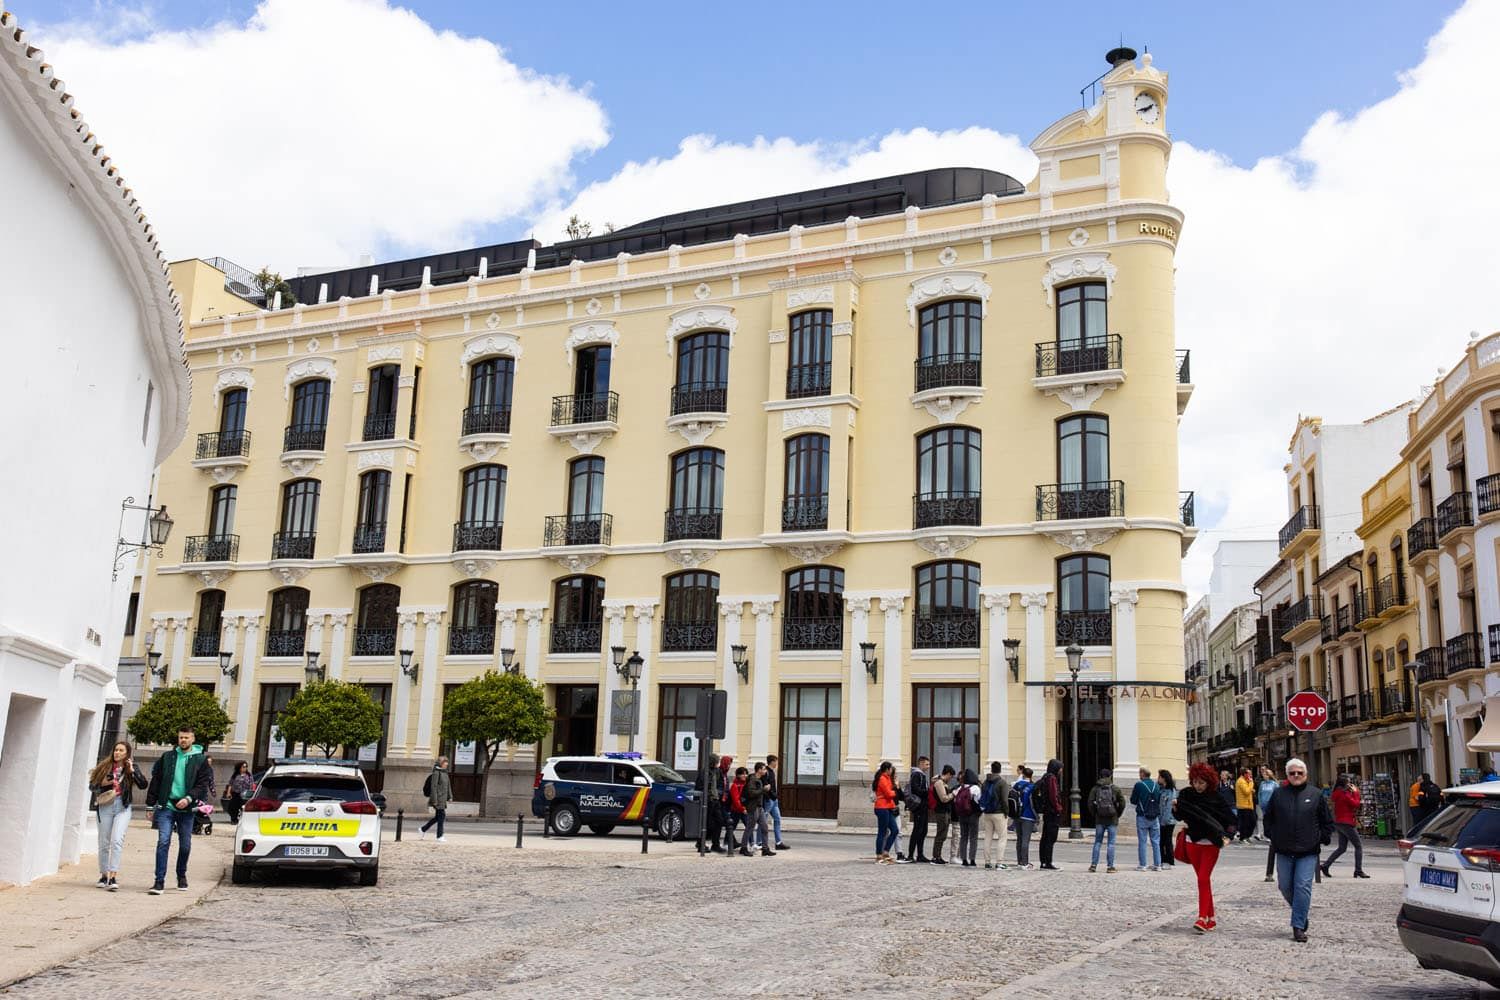 Hotel Catalonia Ronda | One Day in Ronda Itinerary